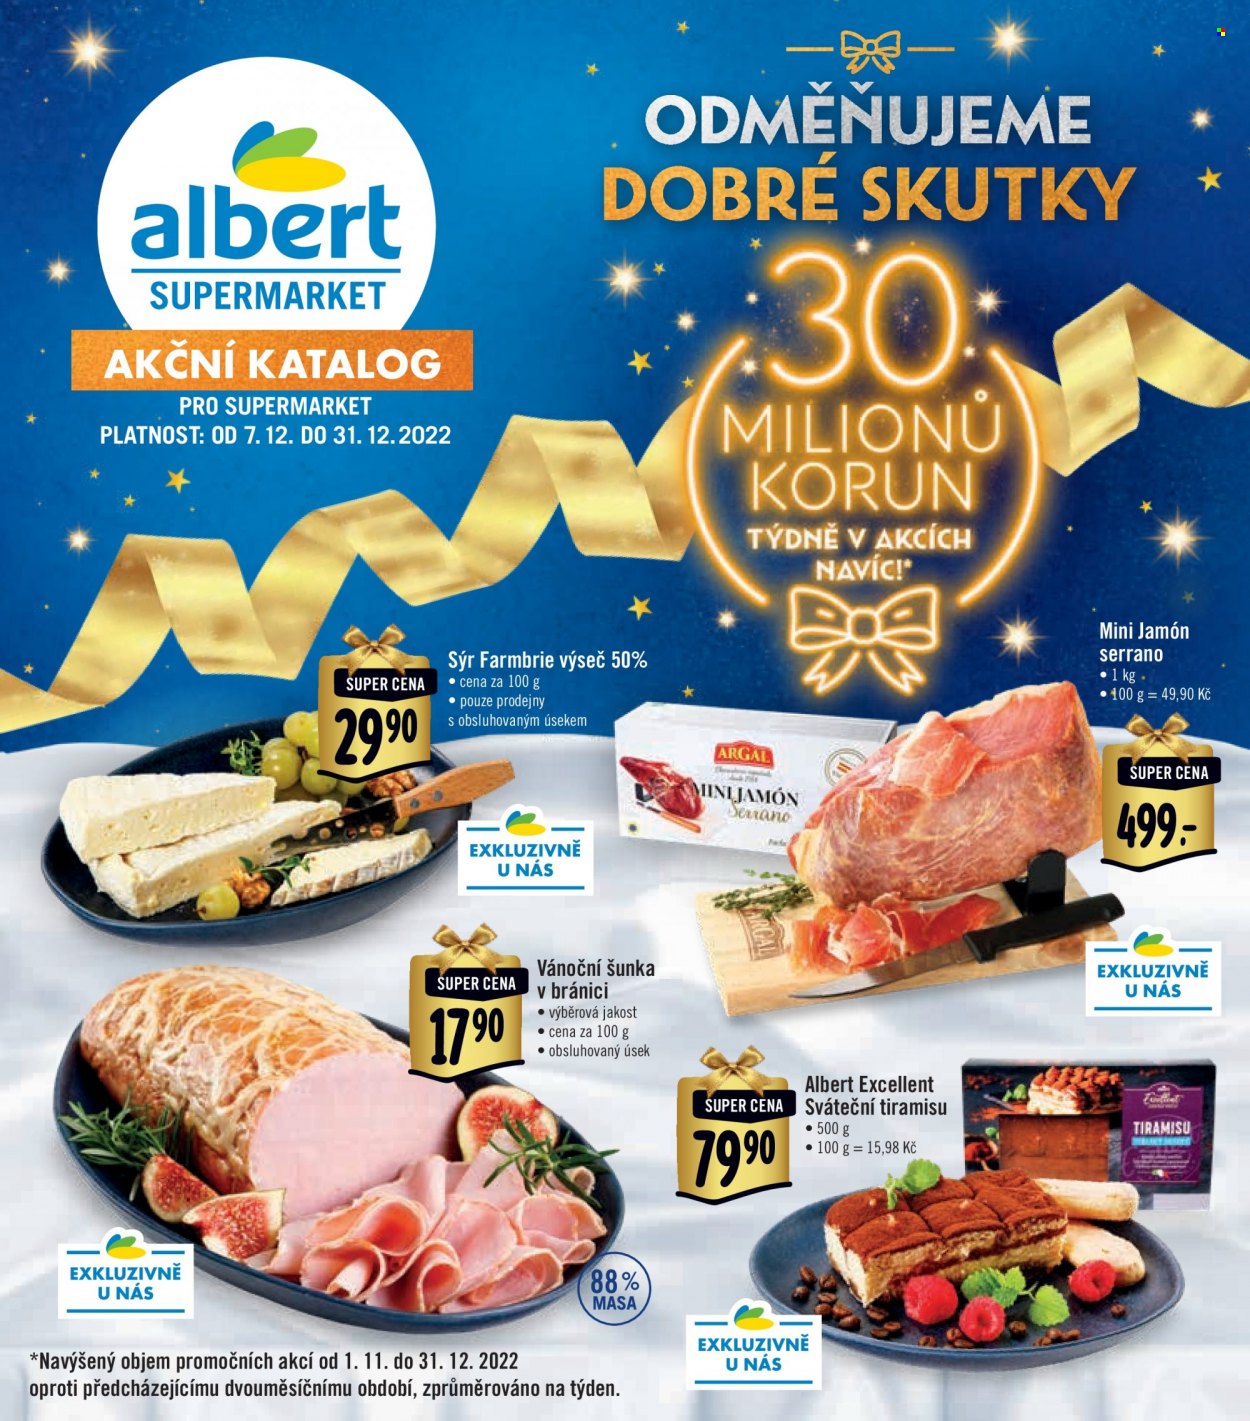 Leták Albert Supermarket - 7. 12. 2022 - 31. 12. 2022. 